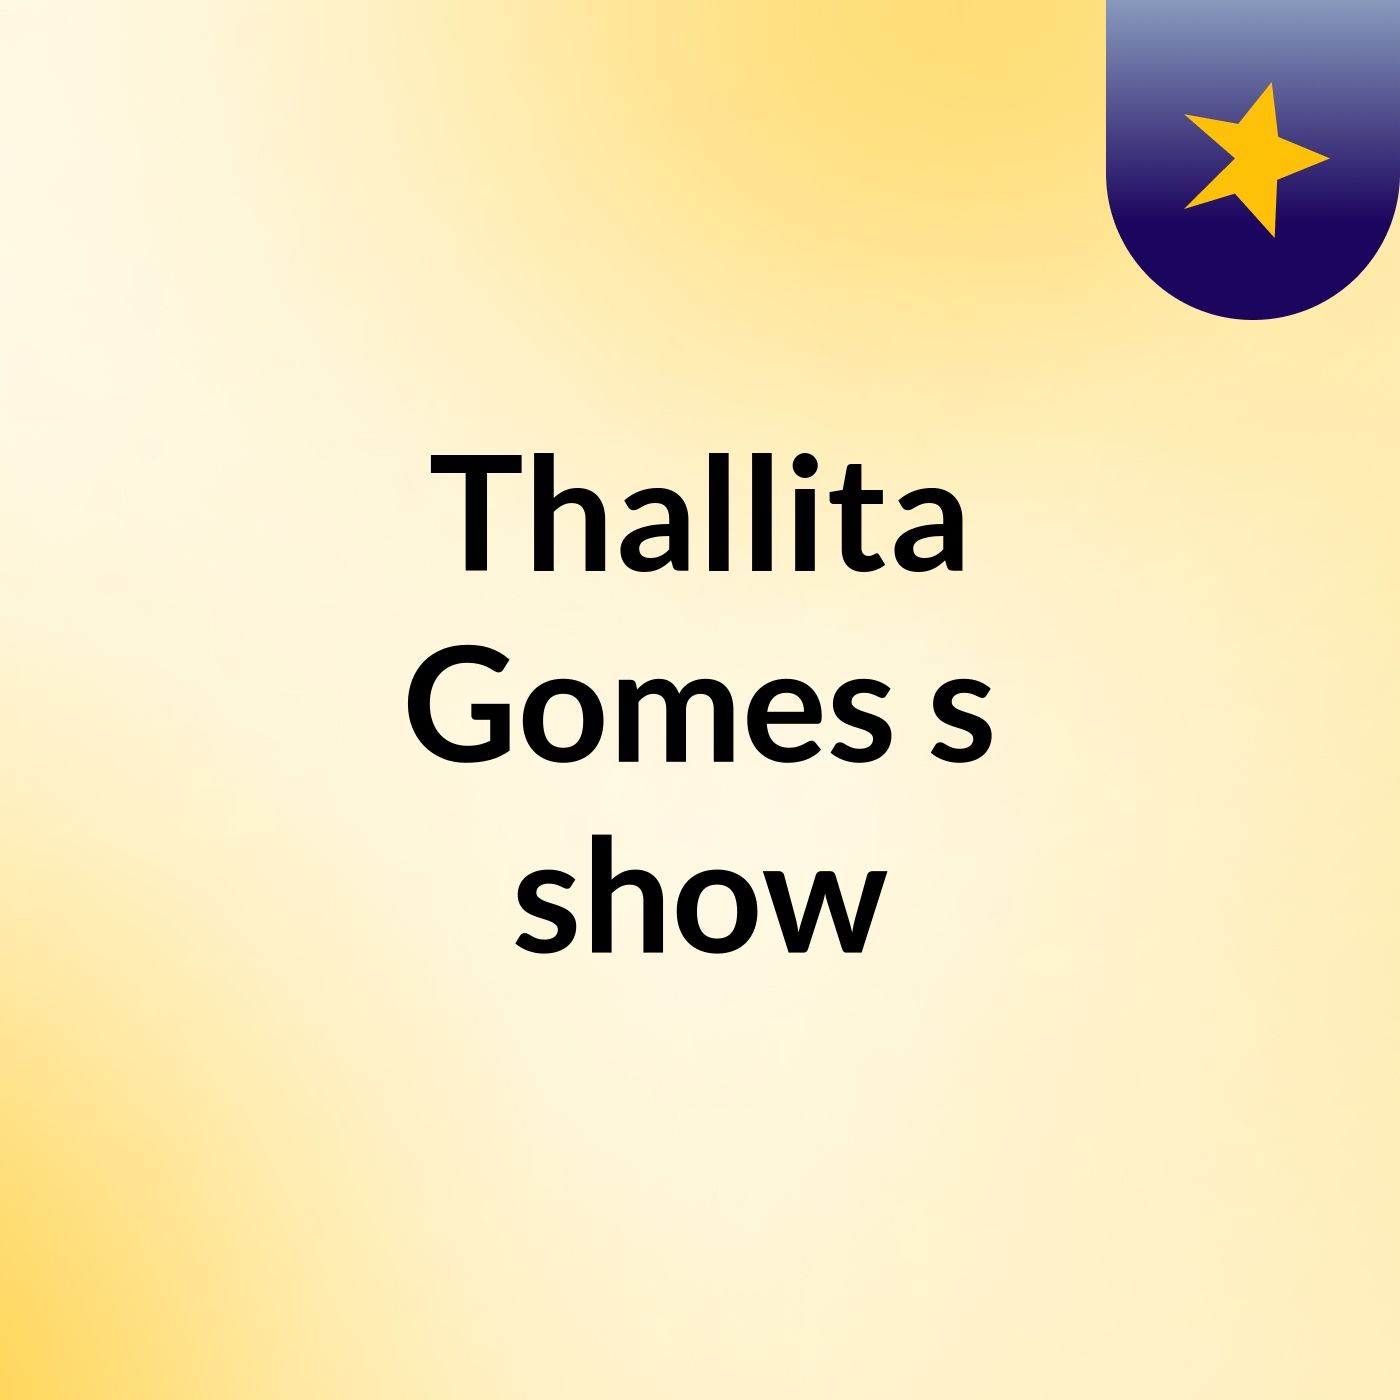 Thallita Gomes's show